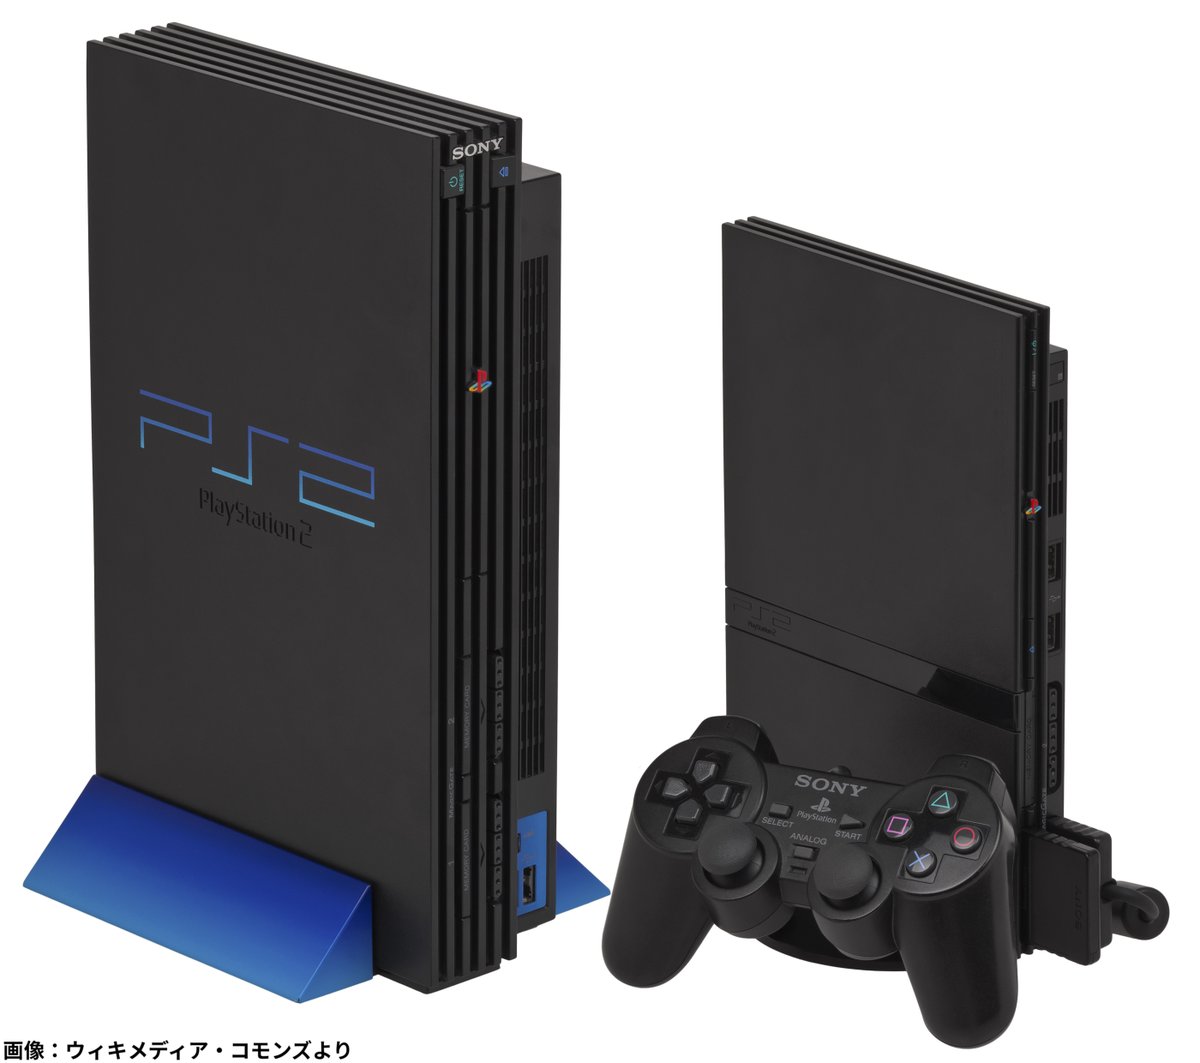 【祝】本日3月4日で「PlayStation 2 発売20周年」

2020年現在、史上最も売れたゲーム機という伝説的記録を持つ。後継機であるPS3発売後も市場の一角を占めるほどの人気だった。単純なDVDプレーヤーとしても安価であるため、当時のDVD市場をけん引。PSソフトとの互換性も、顧客の購入を後押しした。